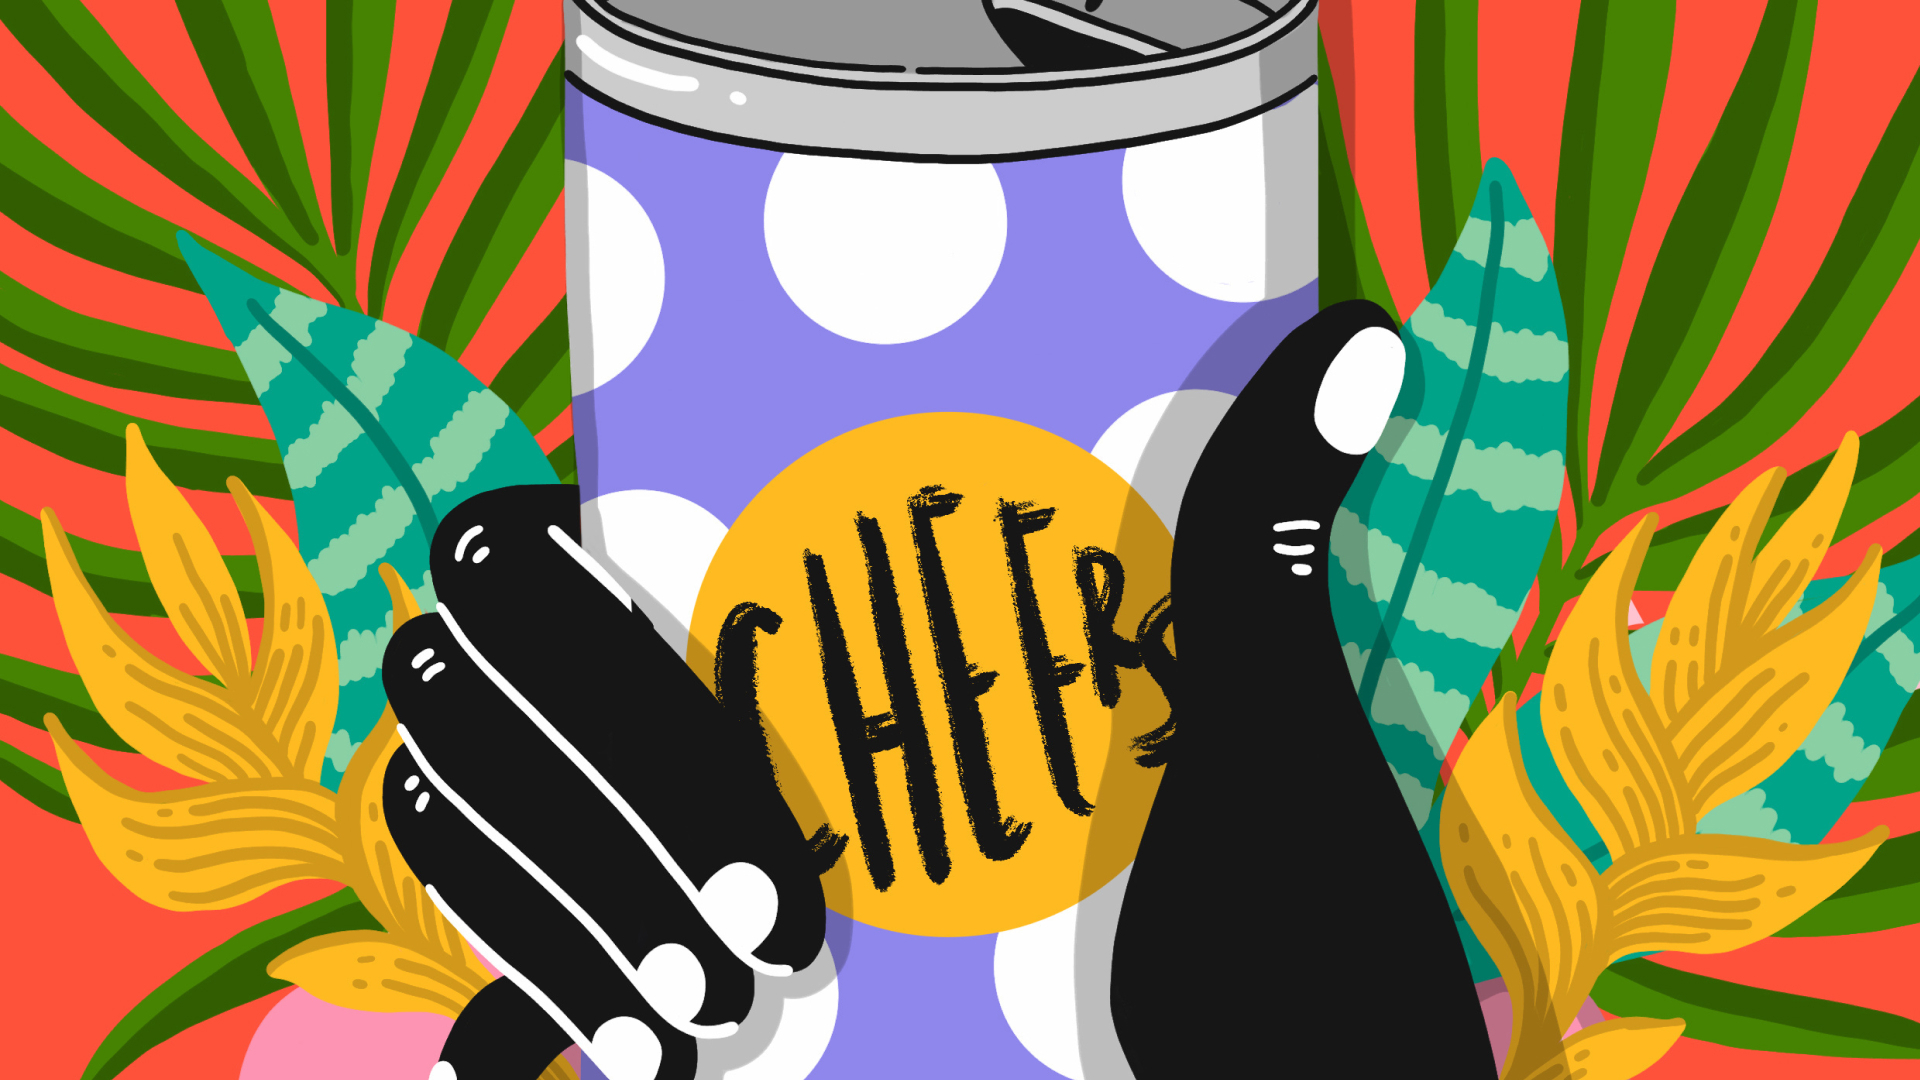 Illustration colorée d'une main tenant une canette portant la mention “Cheers”